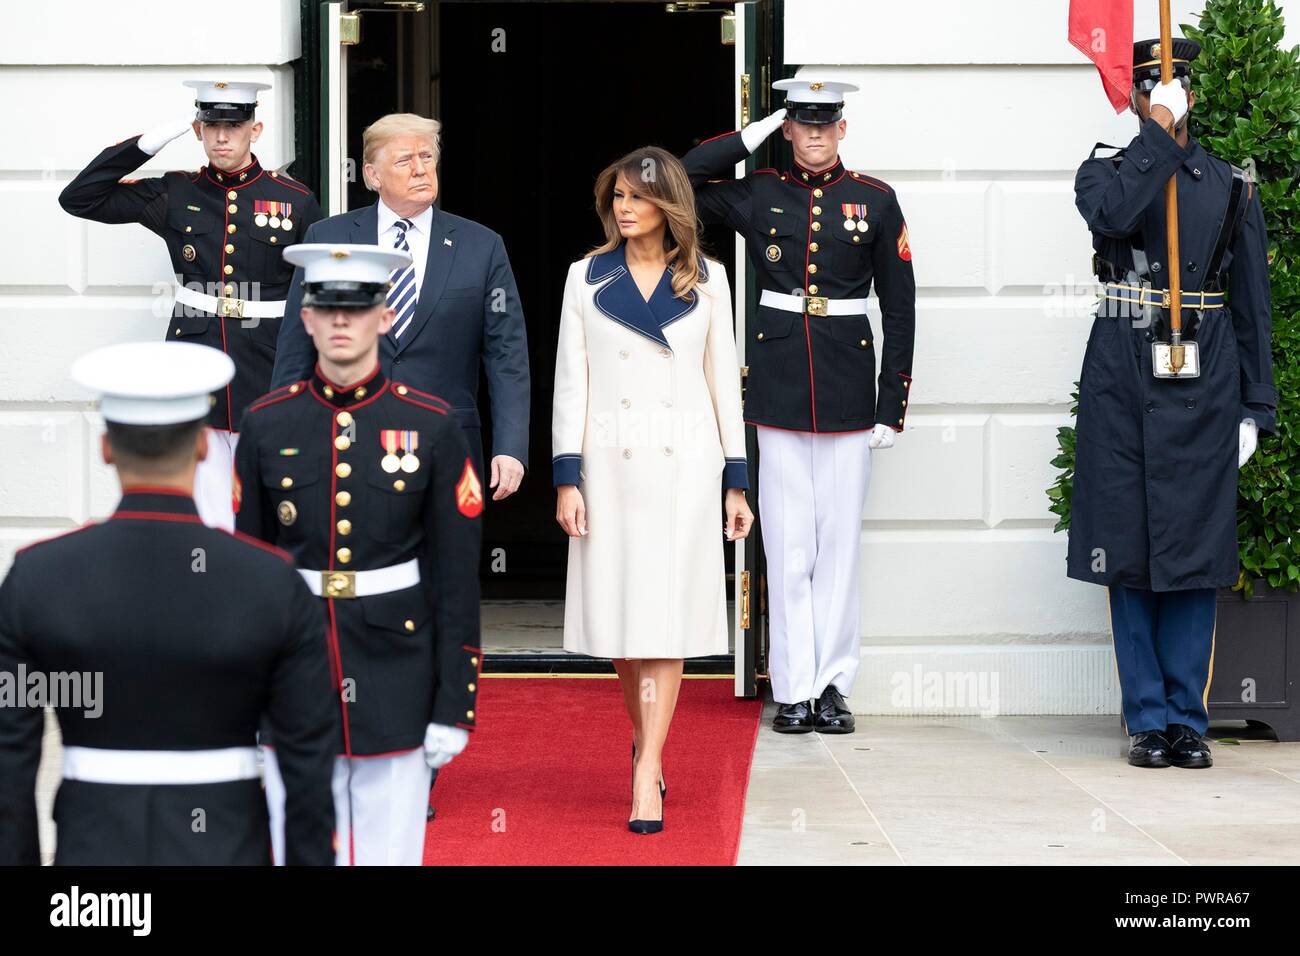 Président américain Donald Trump et la Première Dame Melania Trump à sortir de la portique sud d'accueillir le président polonais Andrzej Duda et Agata Kornhauser-Duda au cours de la cérémonie d'arrivée officielle à la Maison Blanche le 18 septembre 2018 à Washington, DC. Banque D'Images